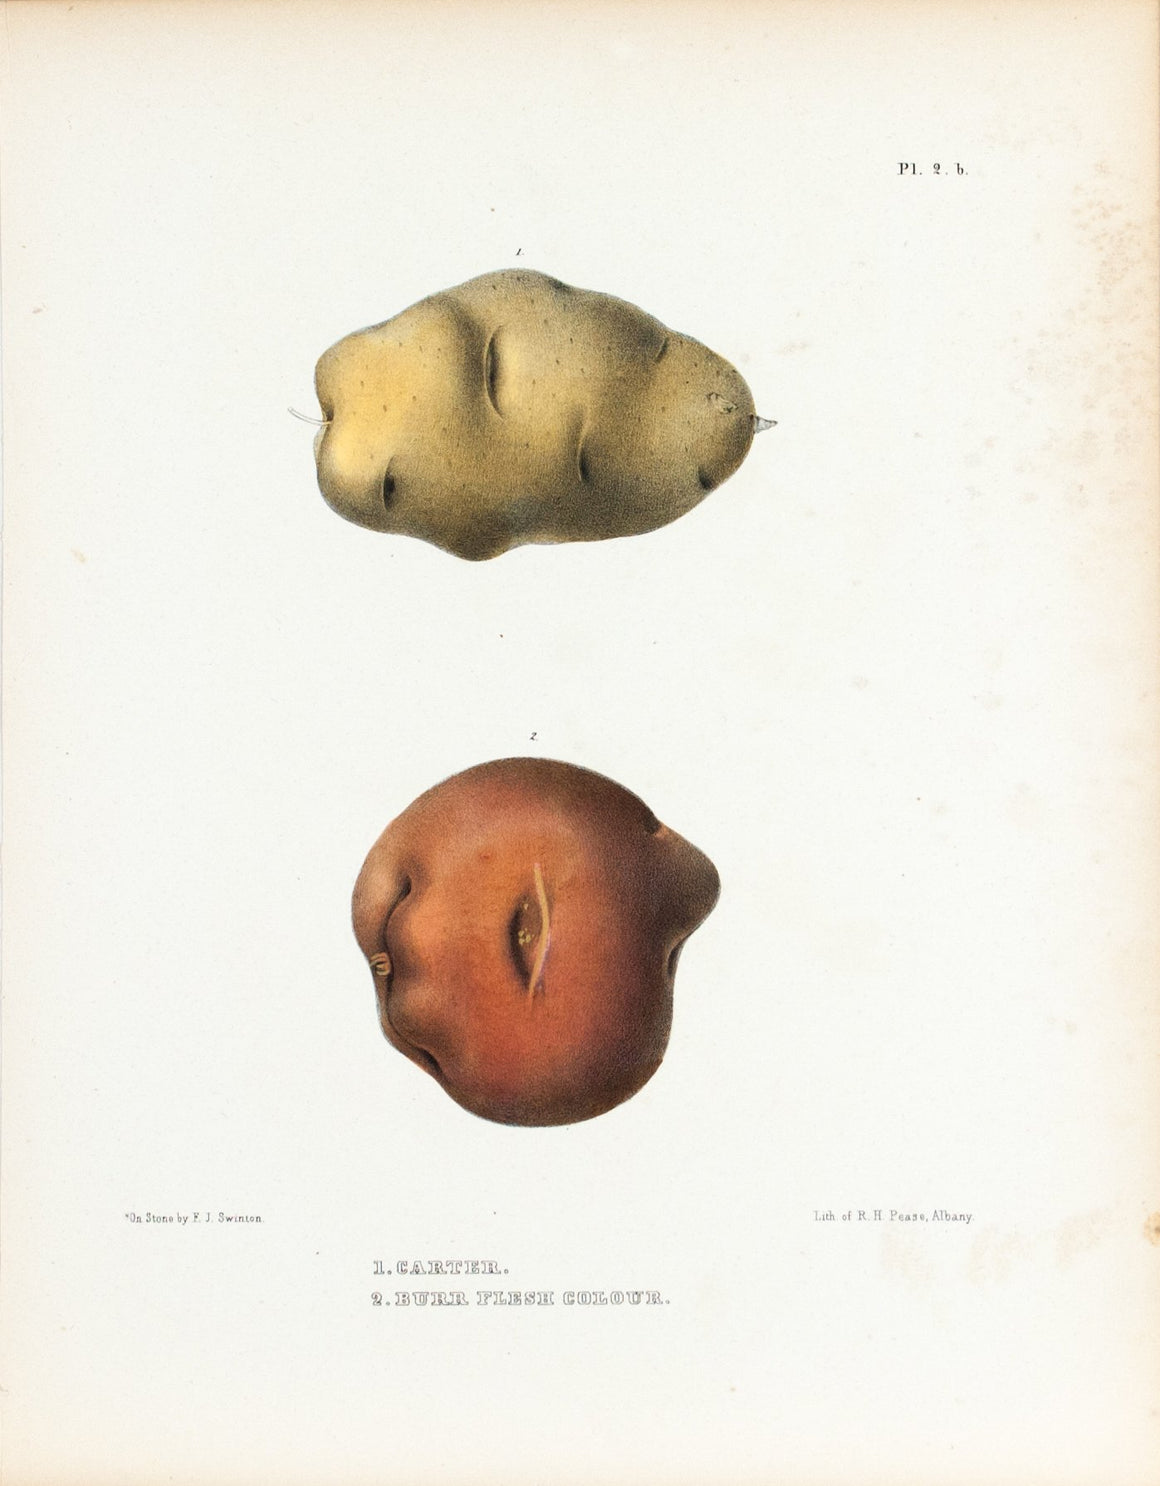 1849 Pl 2 b. Carter, Burr Flesh Colour - Emmons 